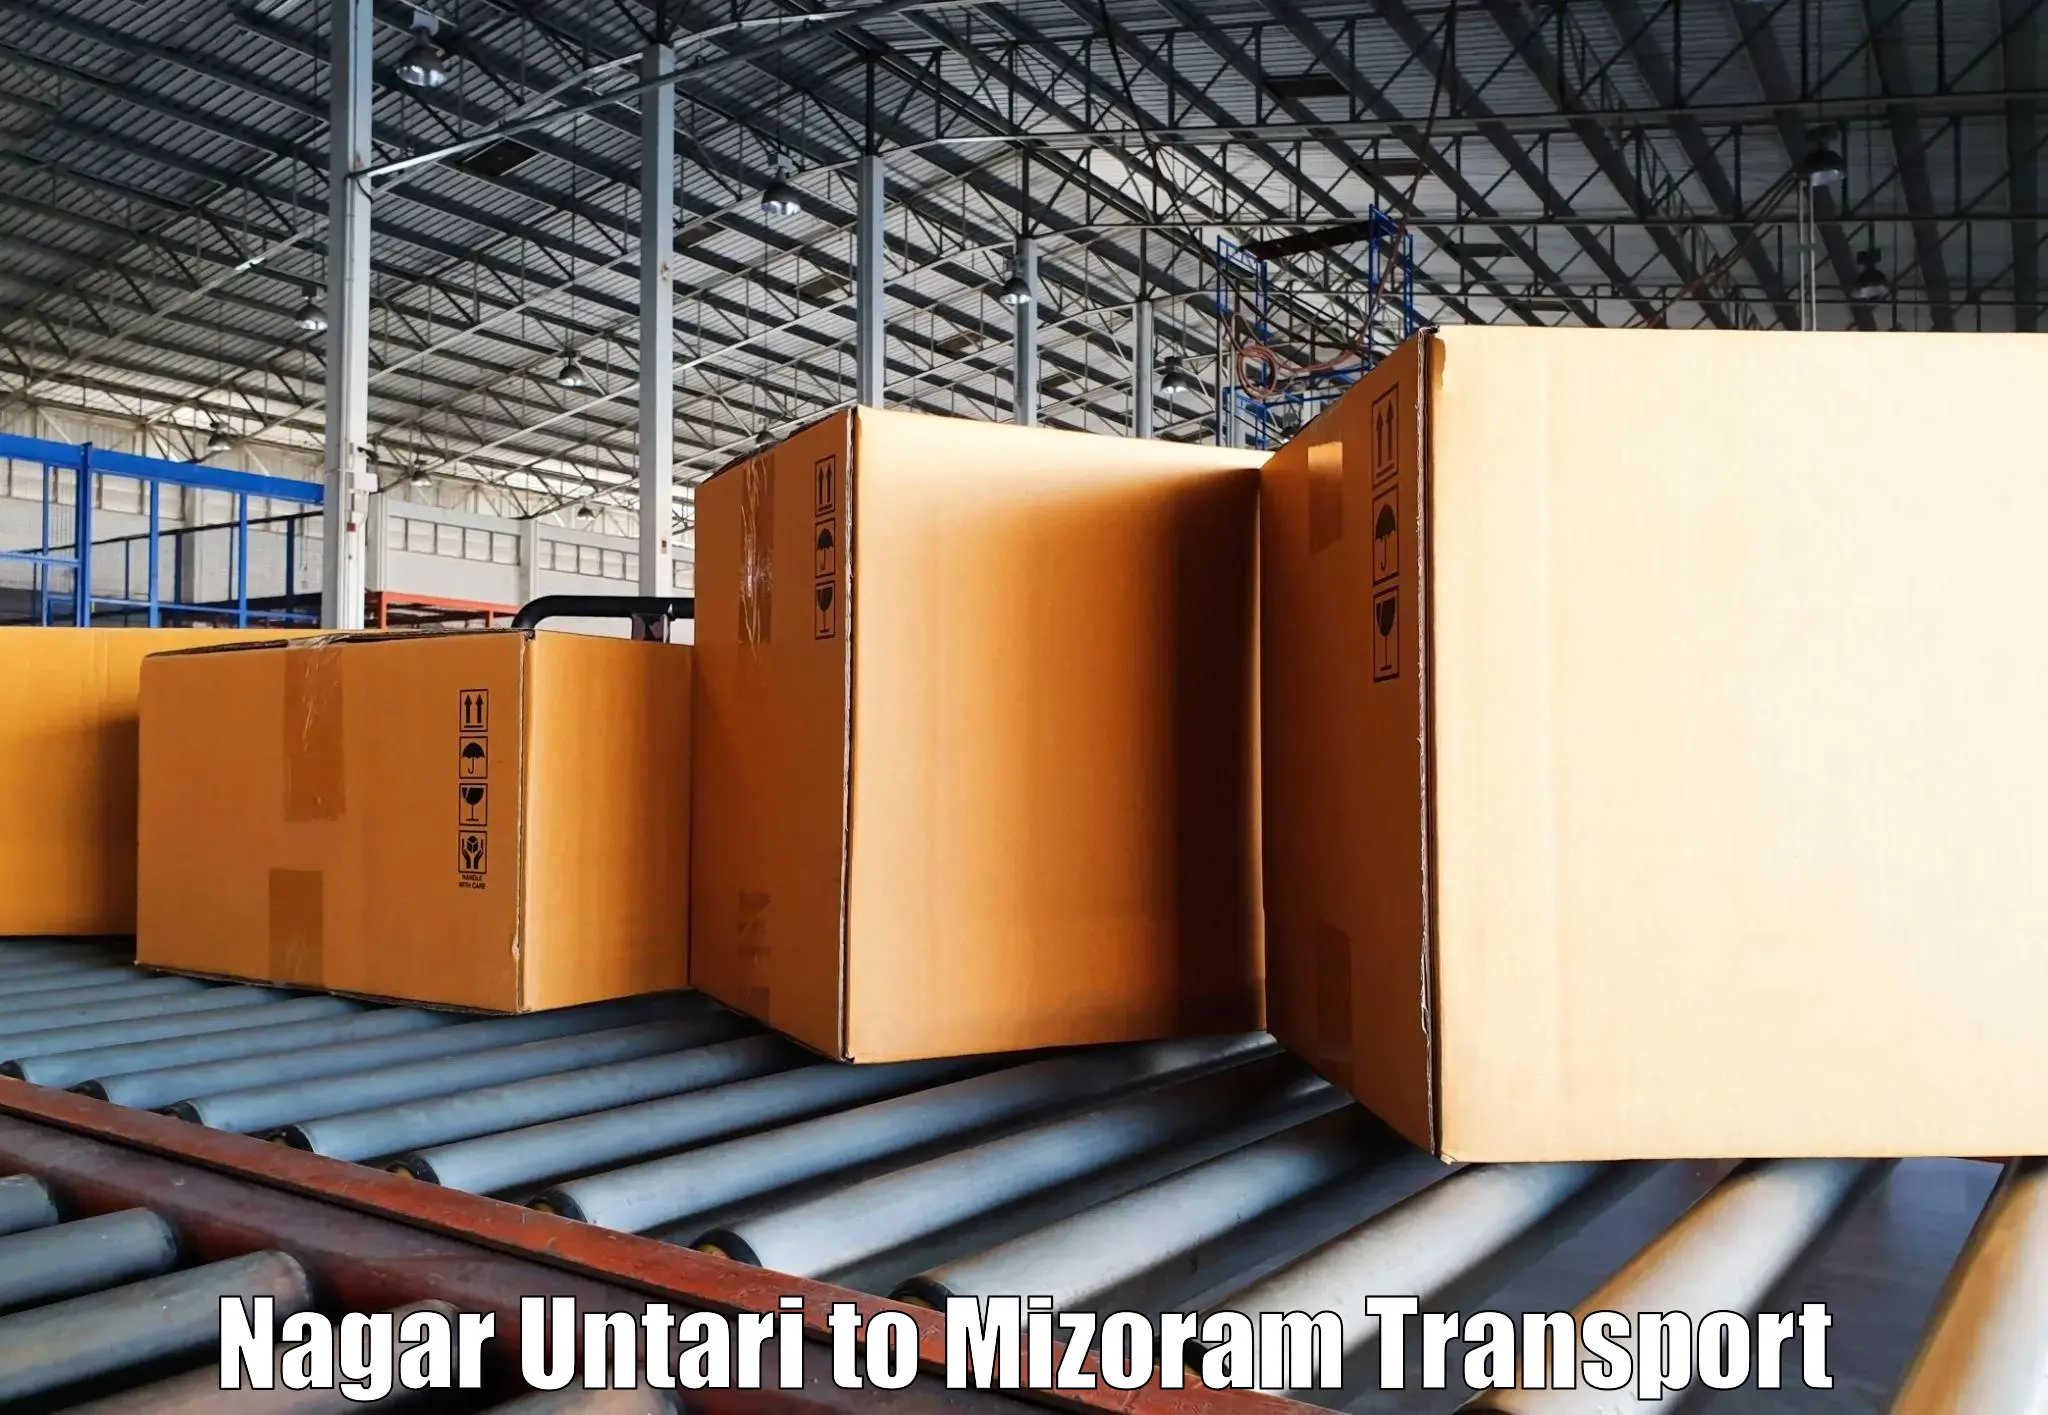 Shipping partner Nagar Untari to Mizoram